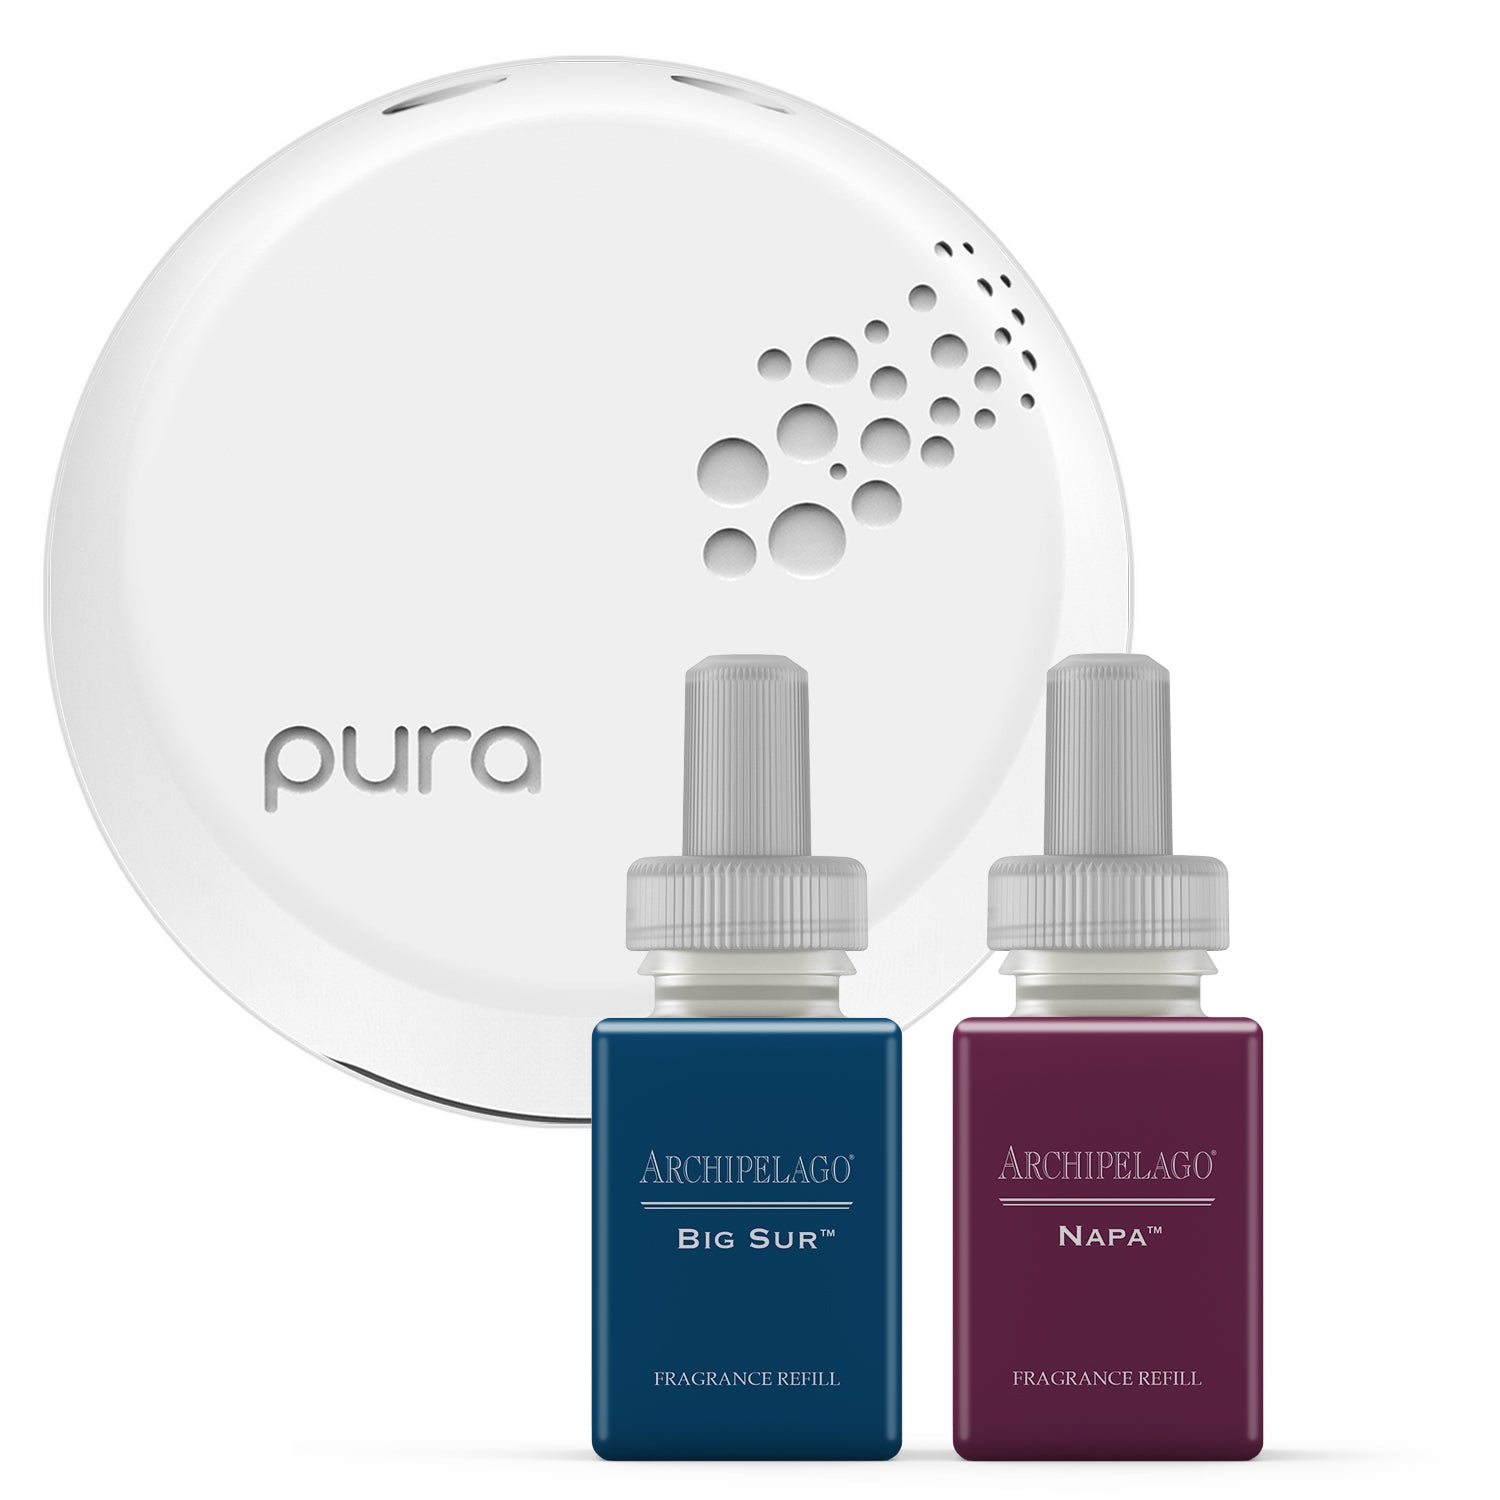 Archipelago Pura Smart Home Fragrance Diffuser Set - Big Sur and Napa, Pura  Diffuser